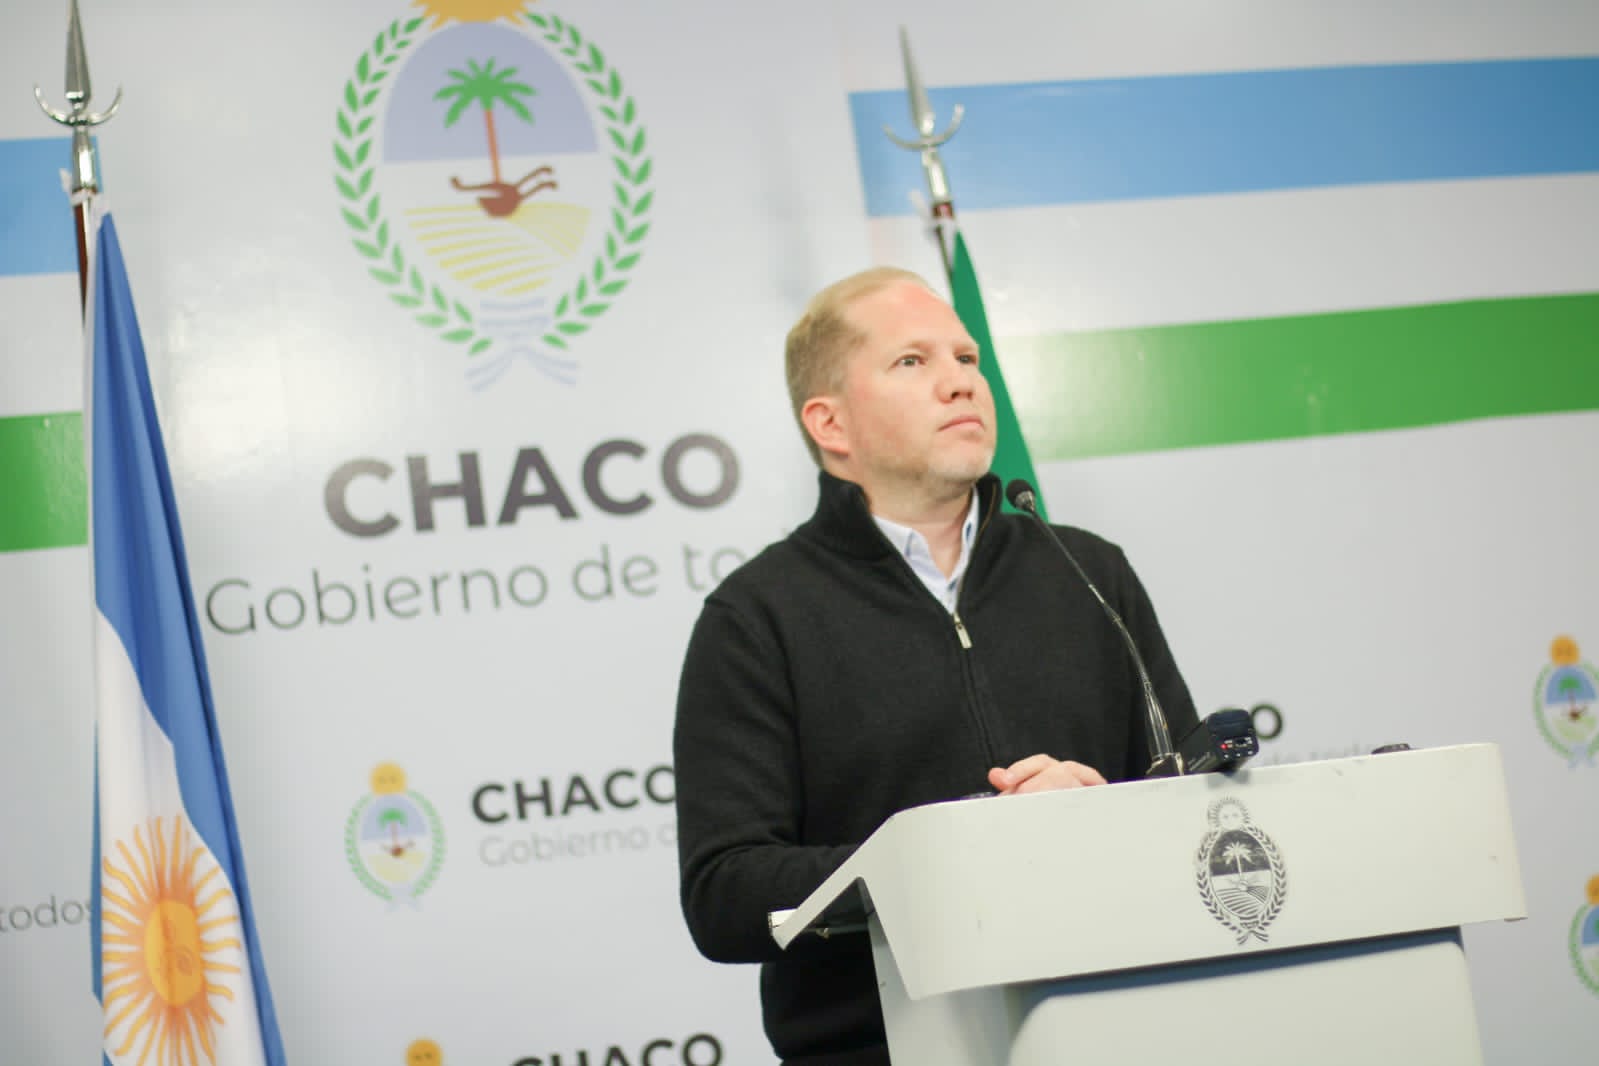 Vocero Juan Manuel Chapo: “Fue muy positivo este primer acercamiento entre ambos equipos de transición”